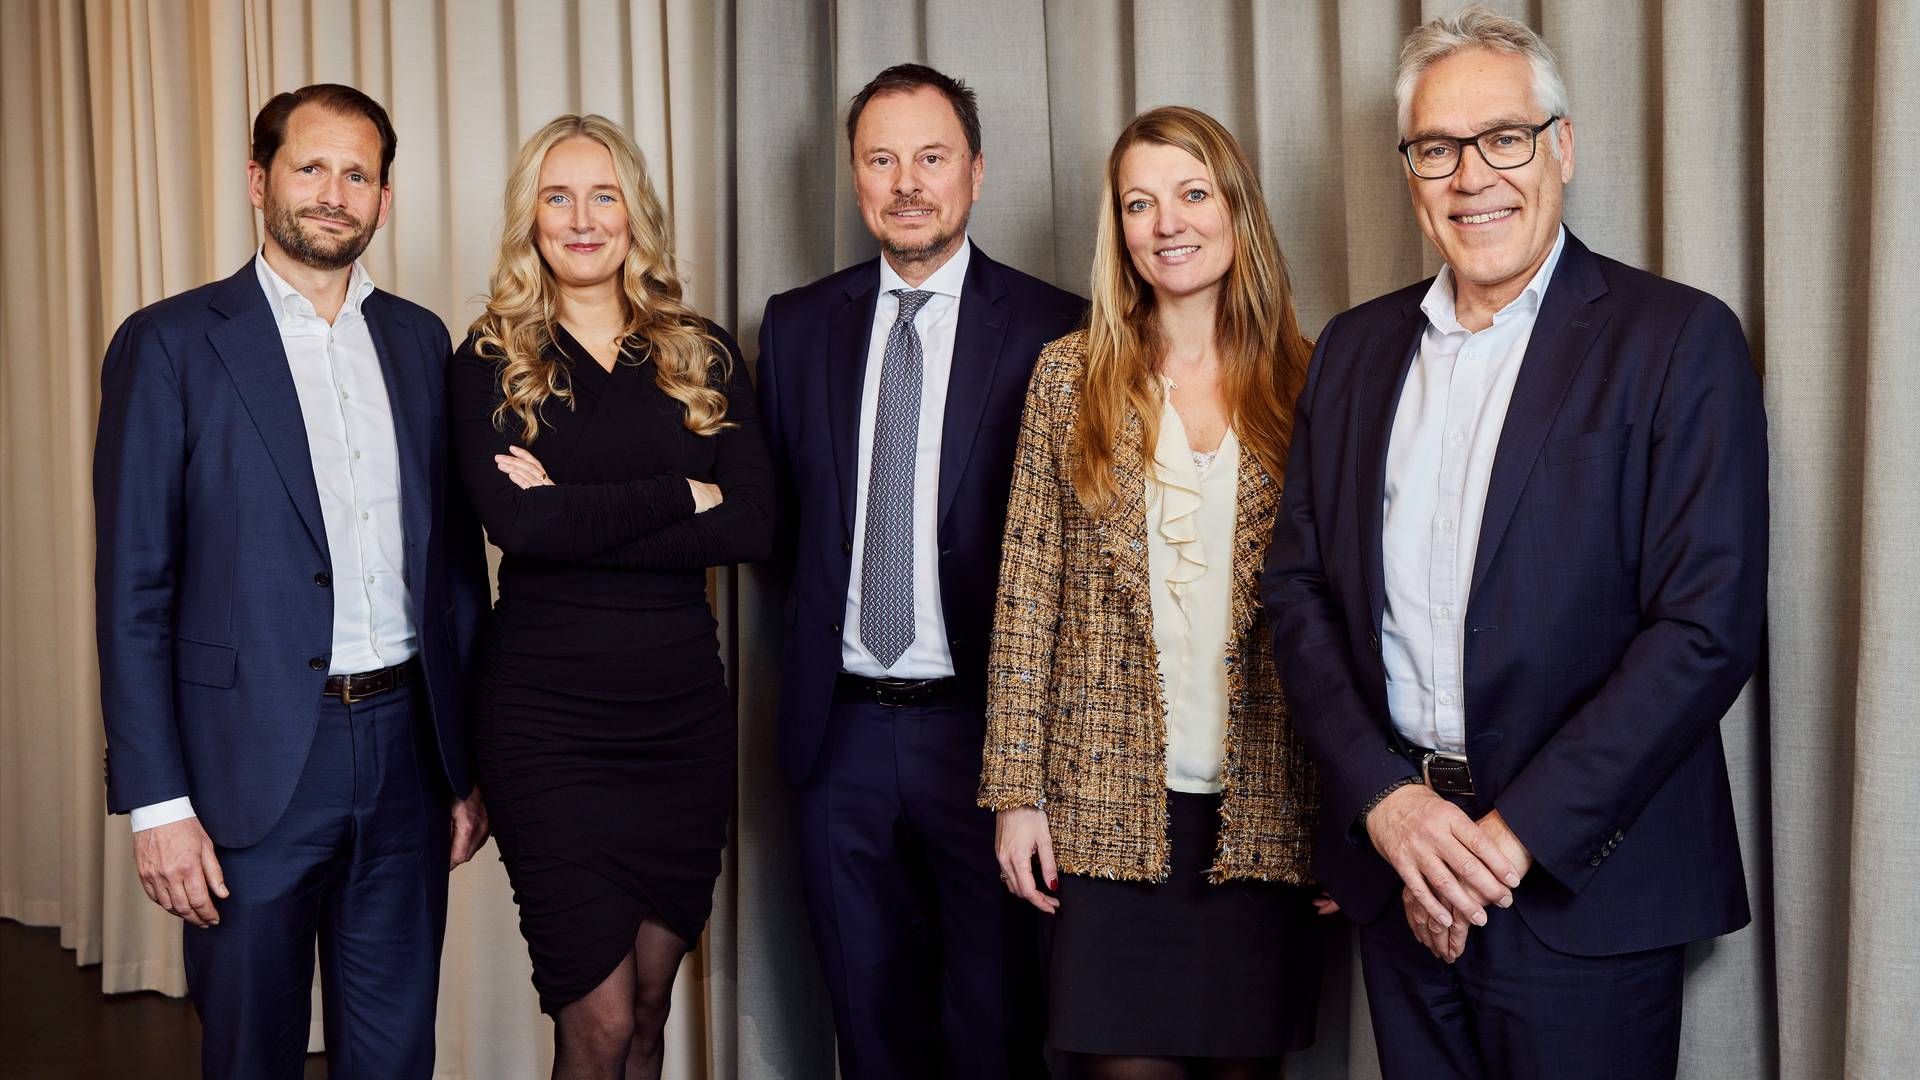 Lundgrens' transaktions- og asset management-team vil fremadrettet være anført af følgende partnere fra venstre: Tobias Vieth, Ninna Thalund Daugaard, Thomas Ulrik, Ann Frølund Winther og Niels Gram-Hanssen. | Foto: Lundgrens / PR